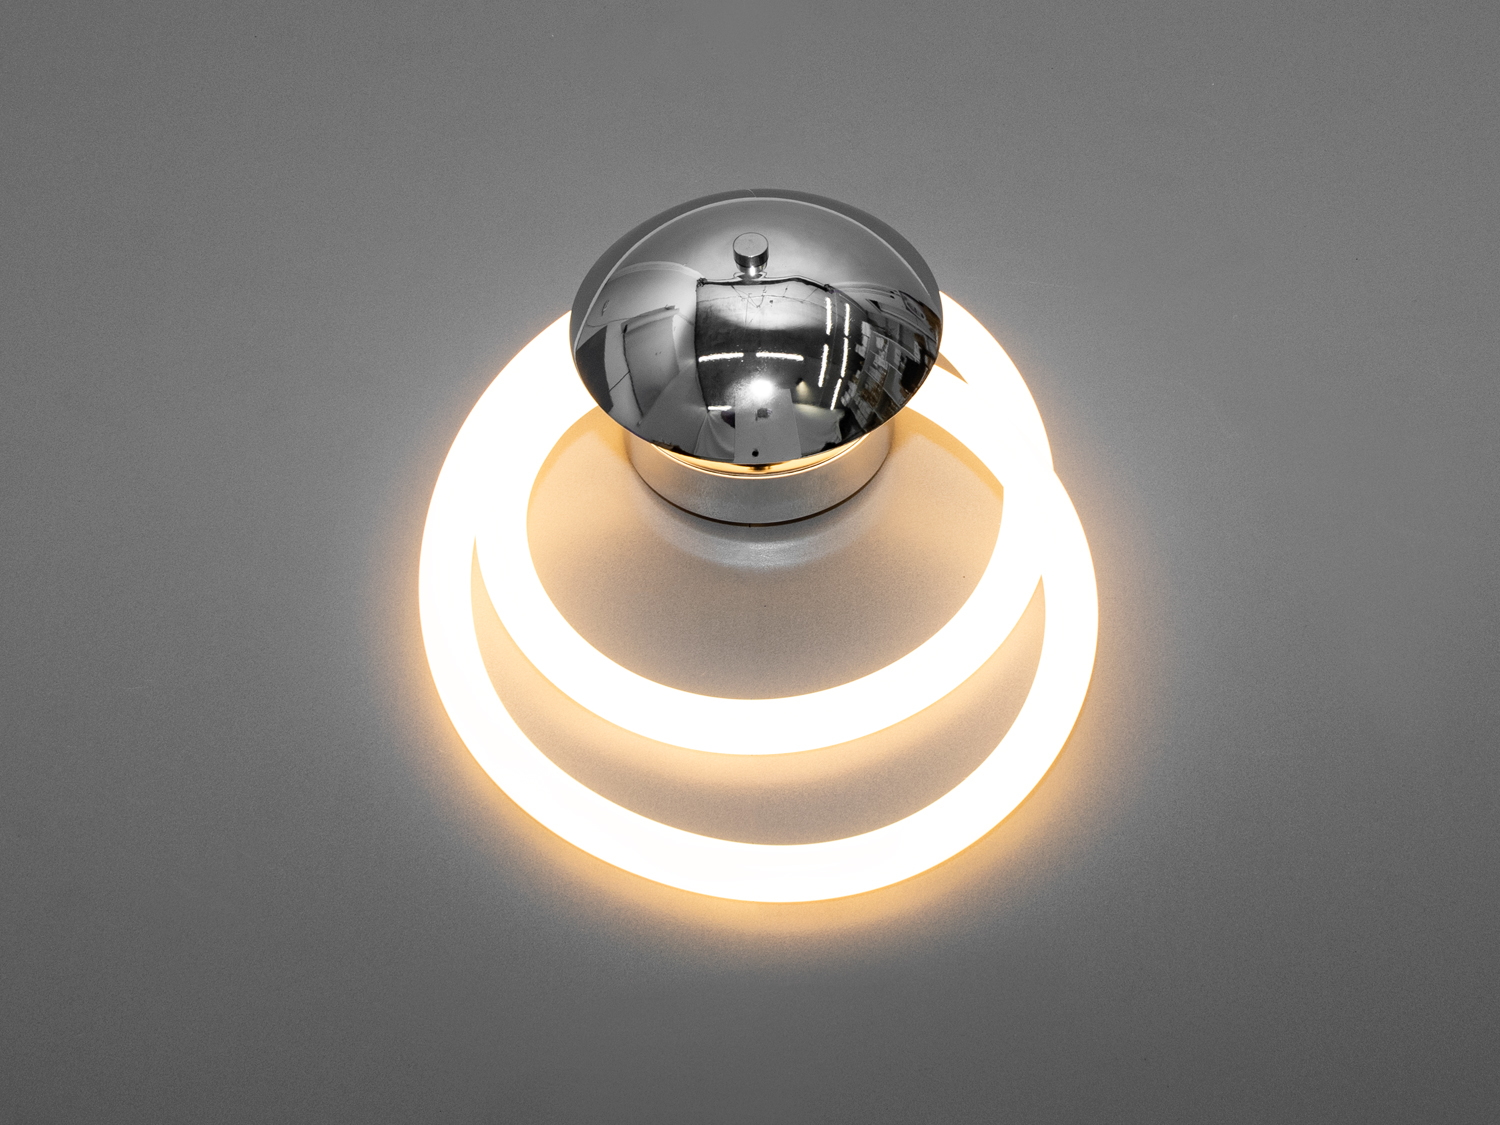 Срібний світлодіодний світильник шланг на 5 W є справжнім втіленням унікальності та інноваційності в освітлювальних приладах. Лед світильник Шланг поєднує в собі елегантність і практичність, додаючи в інтер'єр особливу атмосферу. Відразу кидається в очі оригінальна конструкція світильника, що складається з двох концентричних світлових кіл, які обрамляють центральну сферичну частину з дзеркальним покриттям, відбиваючи і розсіюючи світло в просторі, створюючи теплу і затишну атмосферу.
Світлодіодна технологія, використана в цьому силіконовому шлангу, гарантує довгий термін служби приладу, а також забезпечує безпечність для очей завдяки рівномірному та м'якому світлу без мерехтіння. Колірна температура 3200К створює приємне світло, яке ідеально підходить для створення розслабленої обстановки в спальні або для концентрації уваги в кабінеті.
Гнучкість силіконового шланга надає додаткову вигоду, дозволяючи користувачеві змінювати форму світильника залежно від потреби, що робить його ідеальним вибором для тих, хто хоче додати особистий характер своєму житловому простору. Це також чудове доповнення до основної люстри шланг у великих кімнатах, де потрібне декоративне підсвічування або акцентування уваги на певних деталях інтер'єру.
LEd світильник можна встановити в коридорі як бра, де він буде не тільки виконувати практичну функцію освітлення, але й слугуватиме вишуканим декоративним елементом. Завдяки своїй простоті та витонченості, цей світильник-бра легко впишеться в багато сучасних стилів інтер'єру та ефективно їх доповнить, привносячи світло та тепло в будь-яку кімнату.
Поєднуючи в собі доступну ціну з високою якістю та стильним дизайном, цей світильник є чудовим вибором для тих, хто хоче оновити своє освітлення без зайвих витрат.